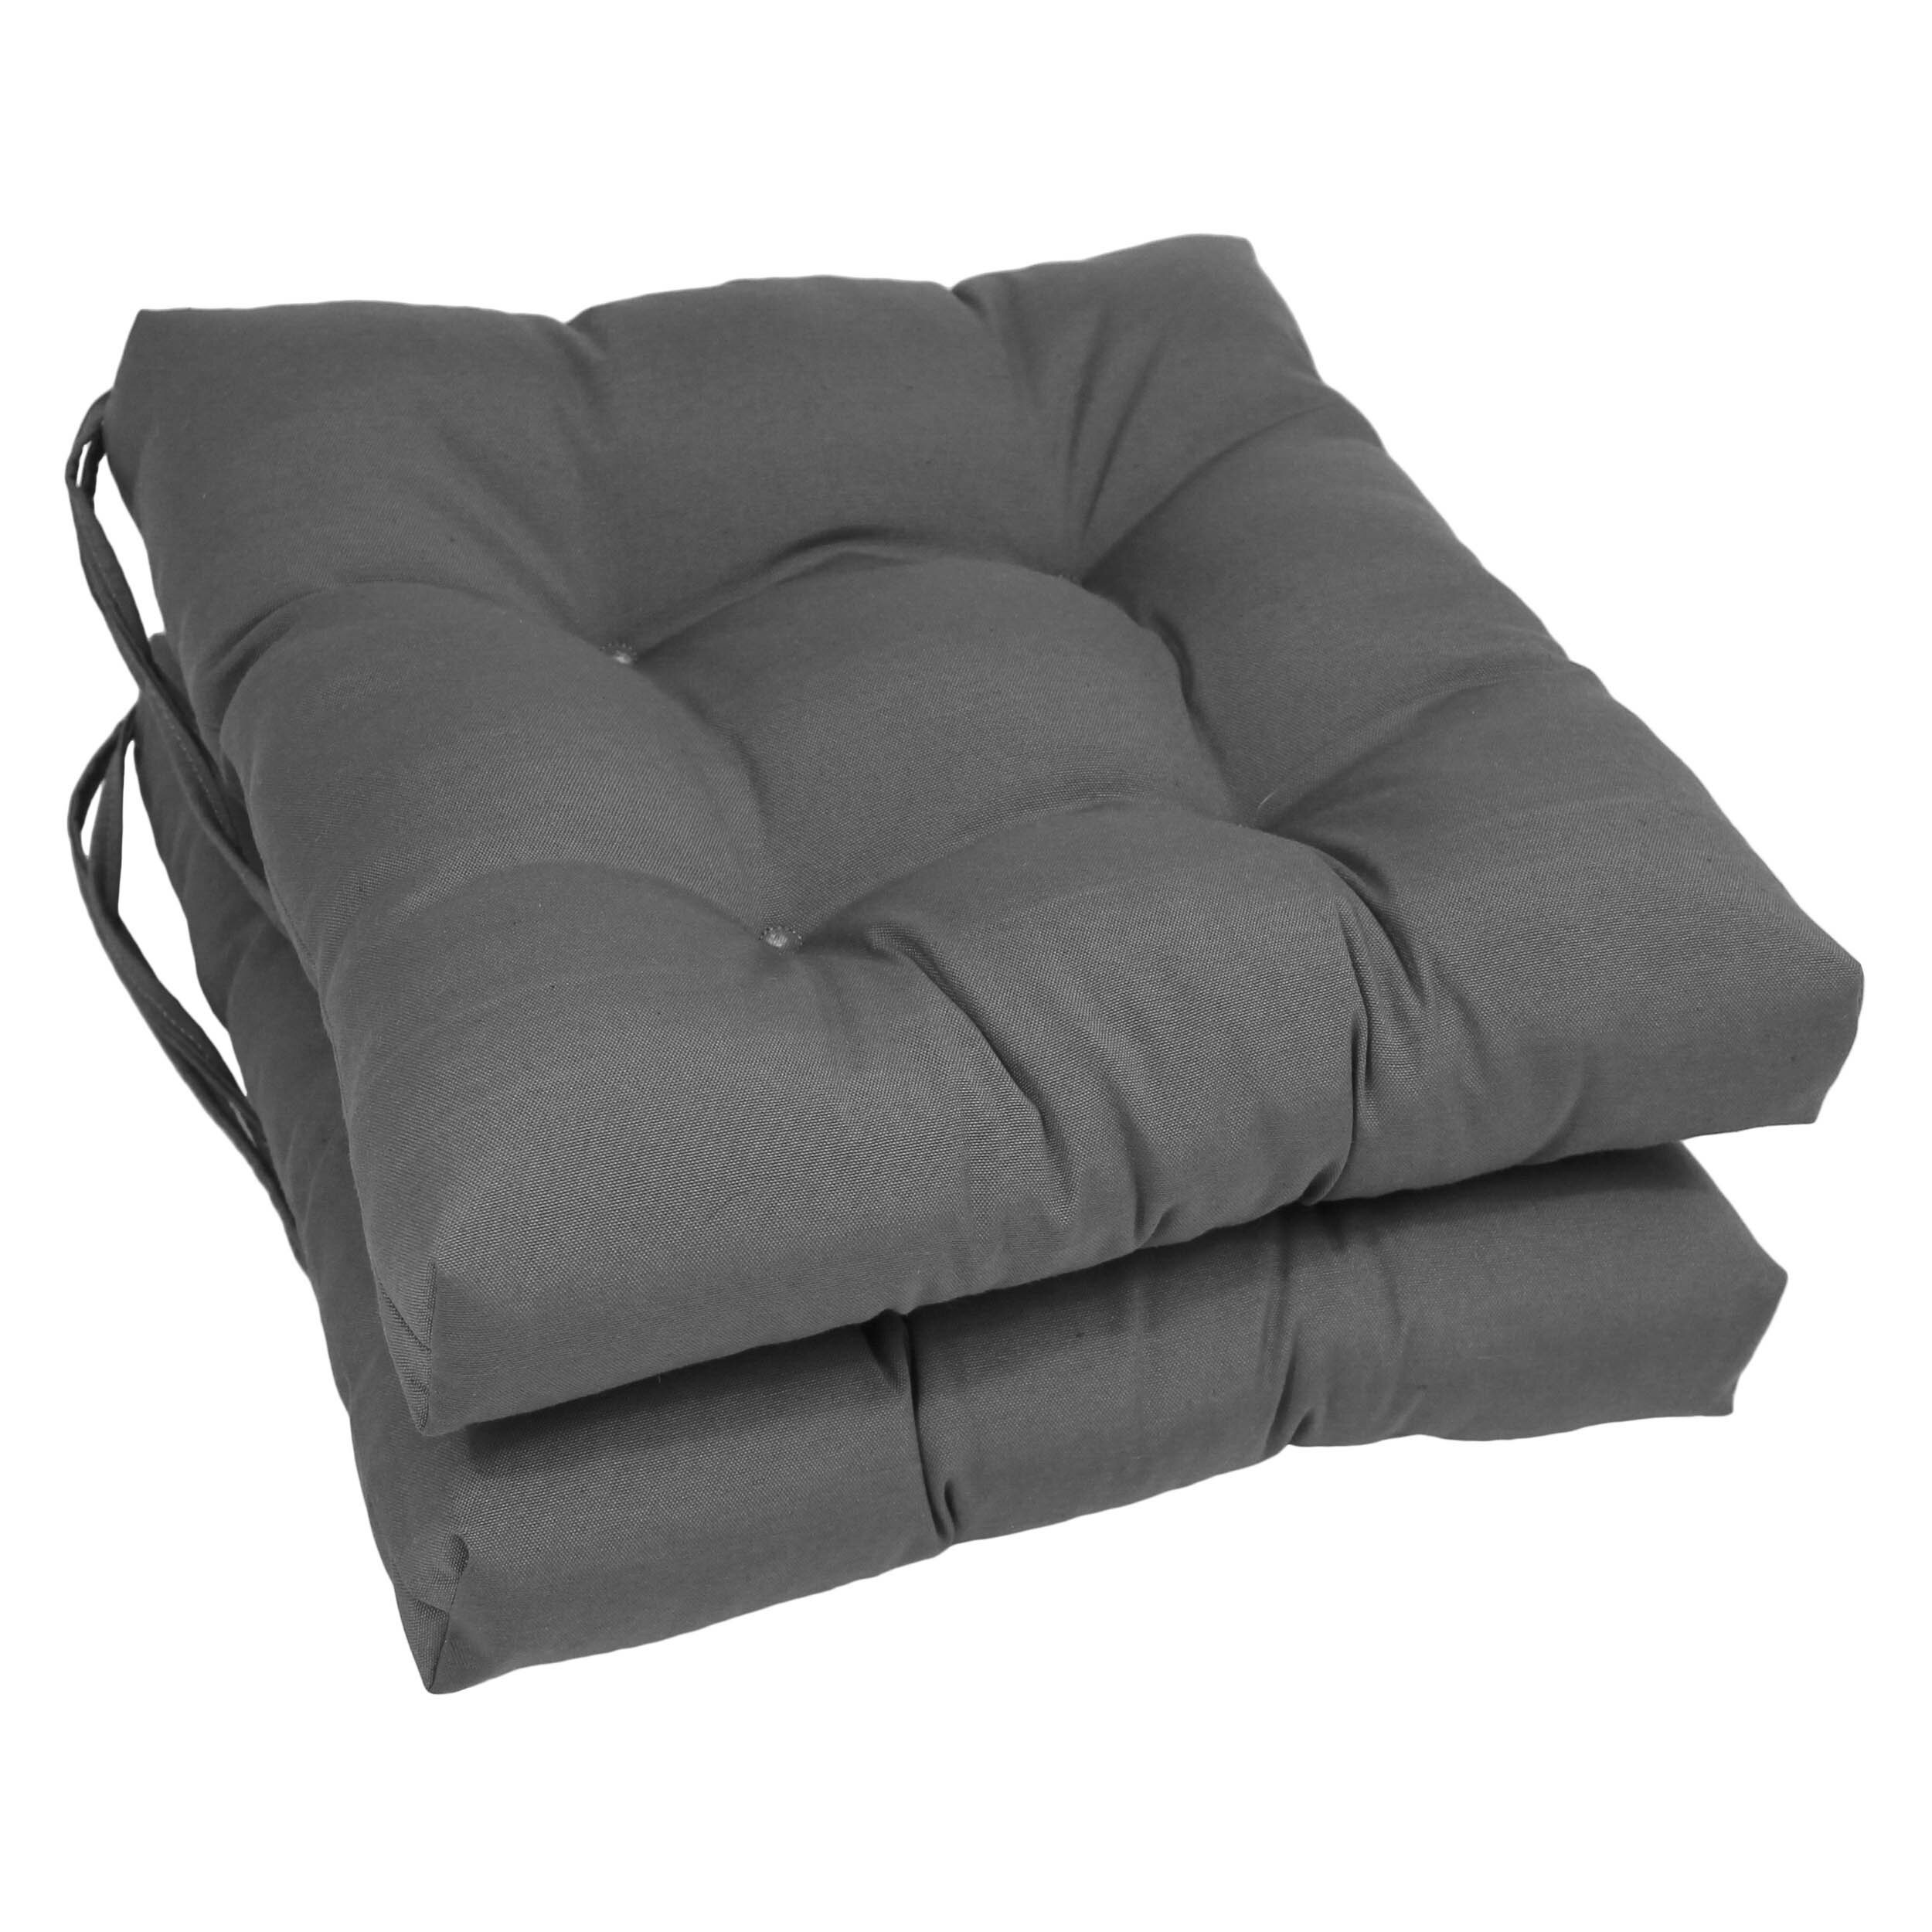 https://visualhunt.com/photos/23/charlton-home-r-seat-cushion-16-w-x-16-d.jpg